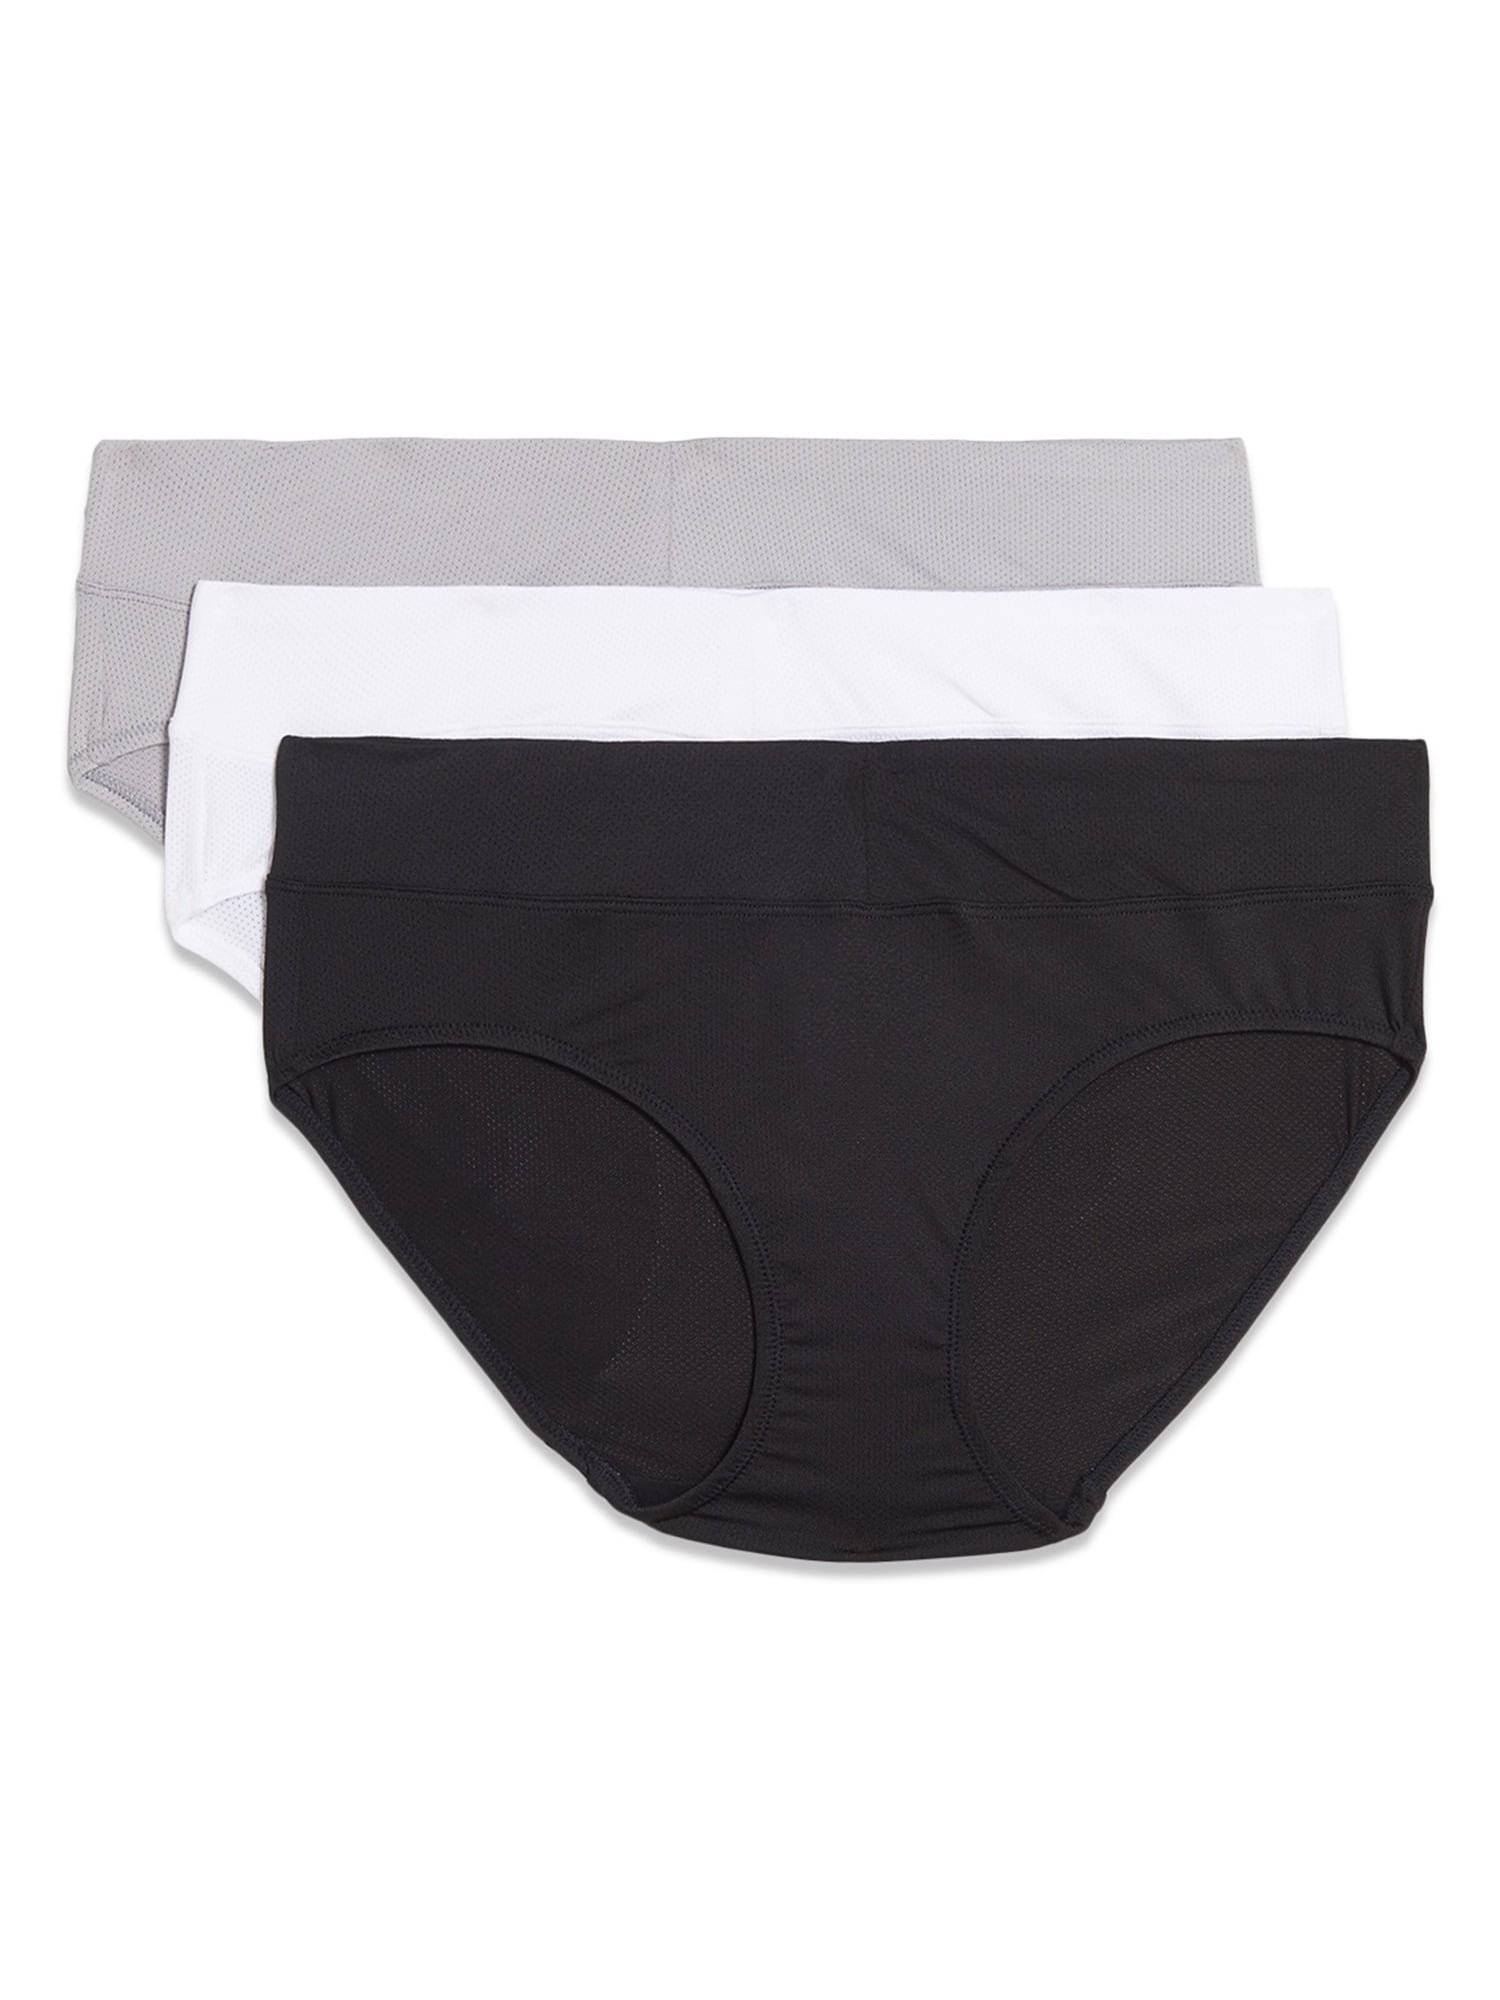 DUKAWA Black Underwear Women,Cotton Soft Moisture Wicking Briefs